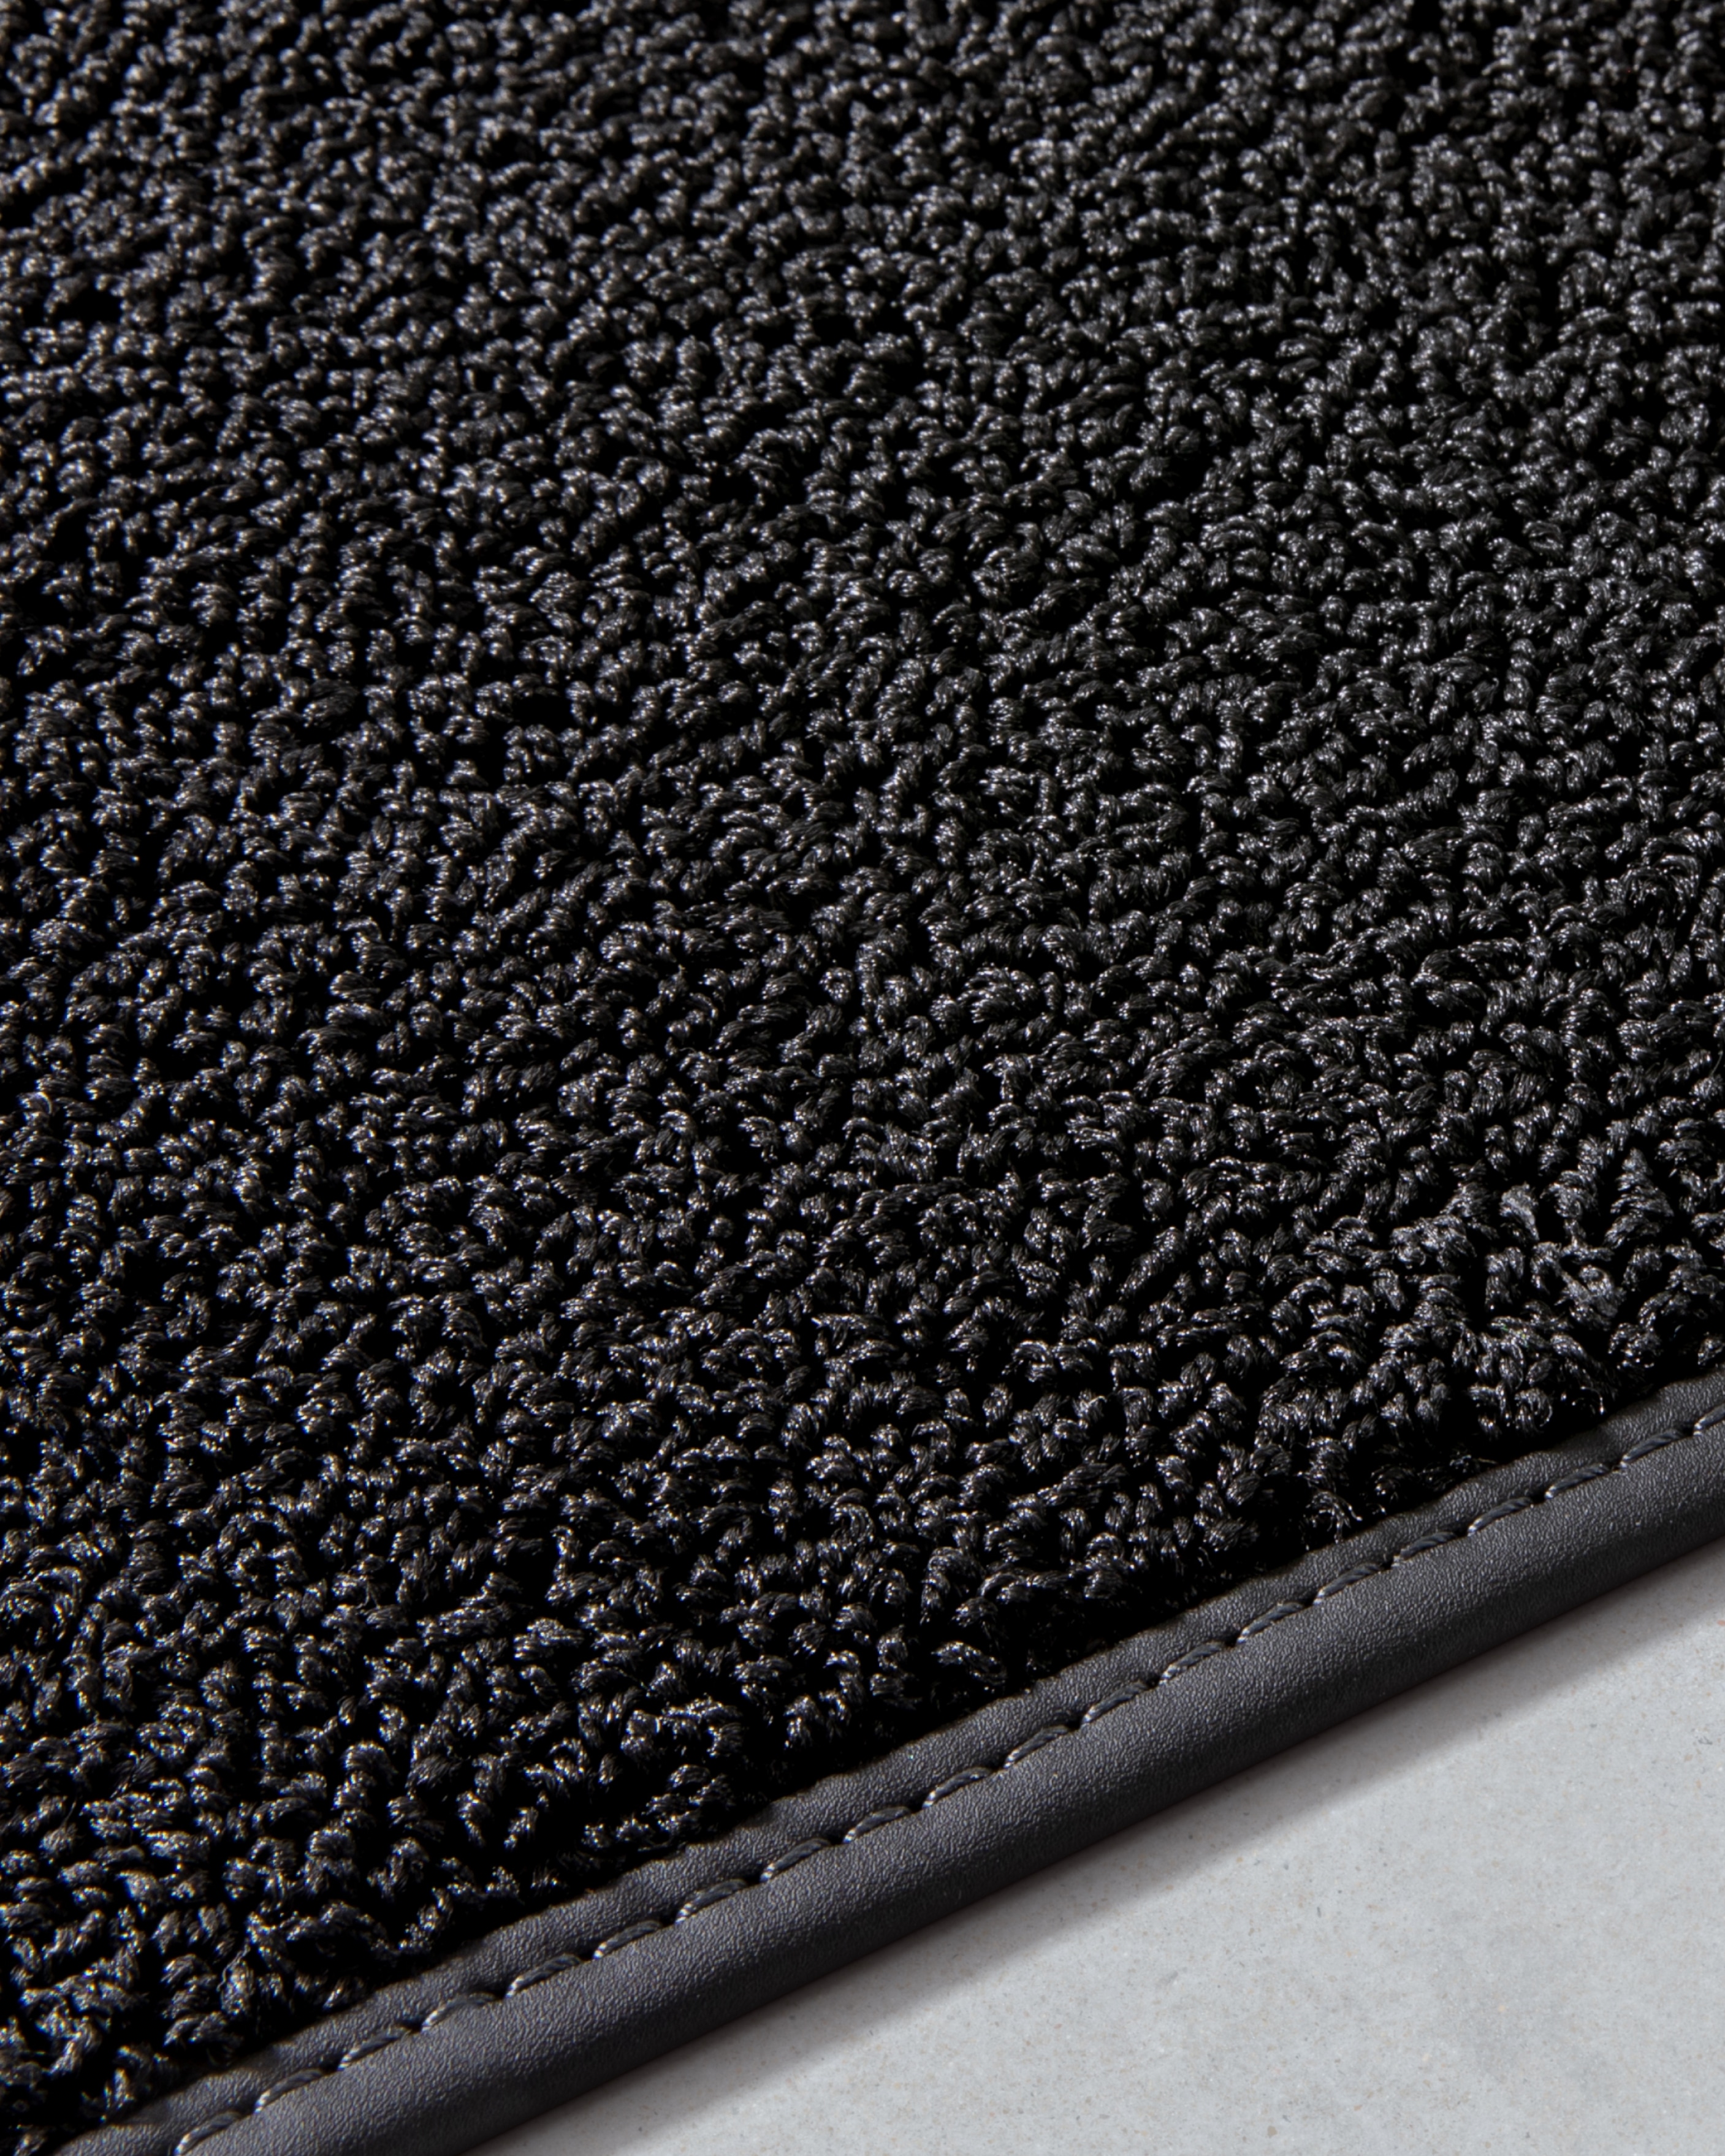 Immagine dei tappetini in tessuto del Volvo EX30 realizzati parzialmente da reti da pesca e ispirati alle gocce di pioggia.